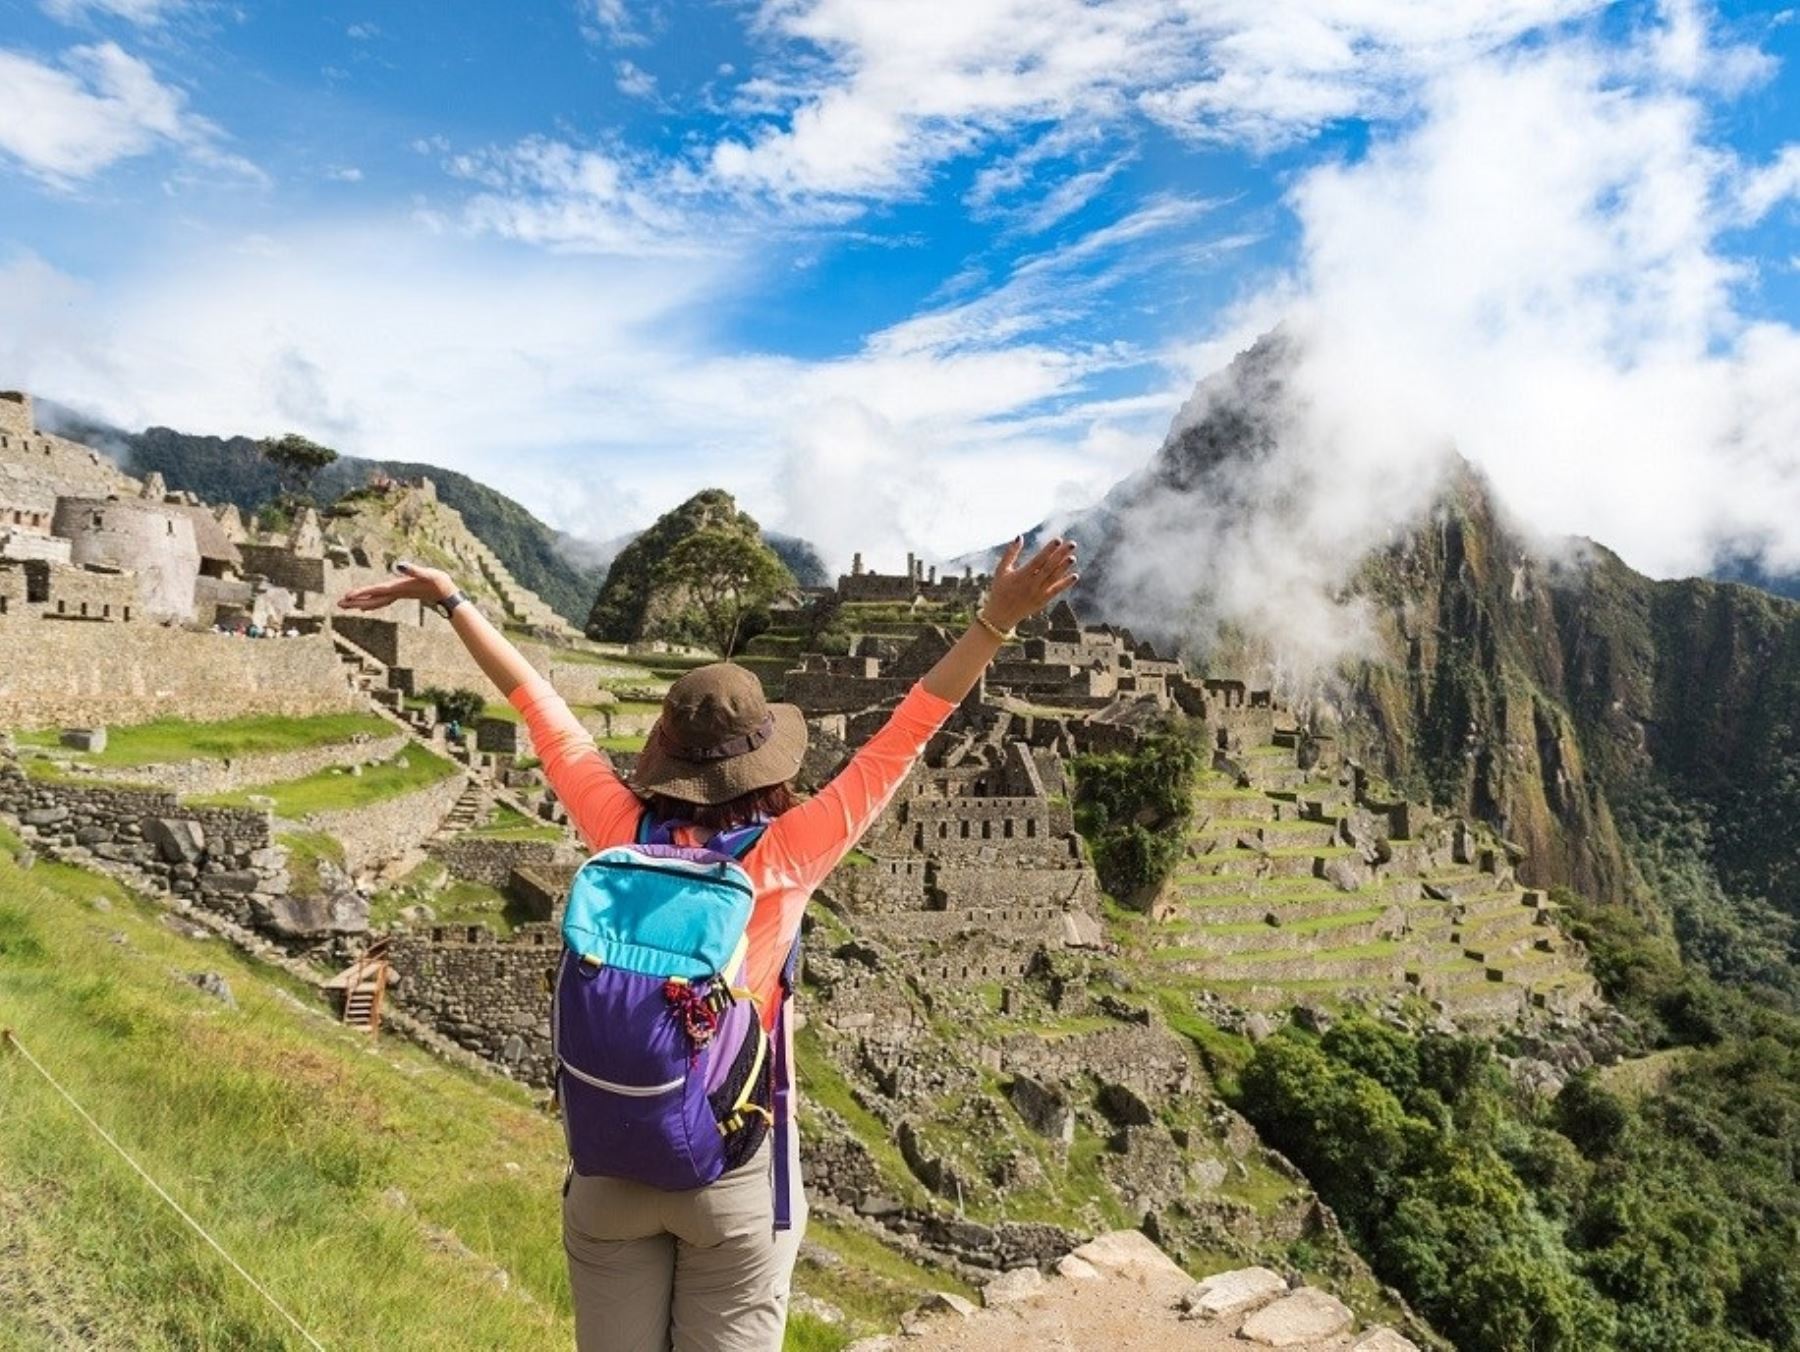 Explora las vistas panorámicas de los lugares más importantes de Machu Picchu con los recorridos de 360˚ de Street View.